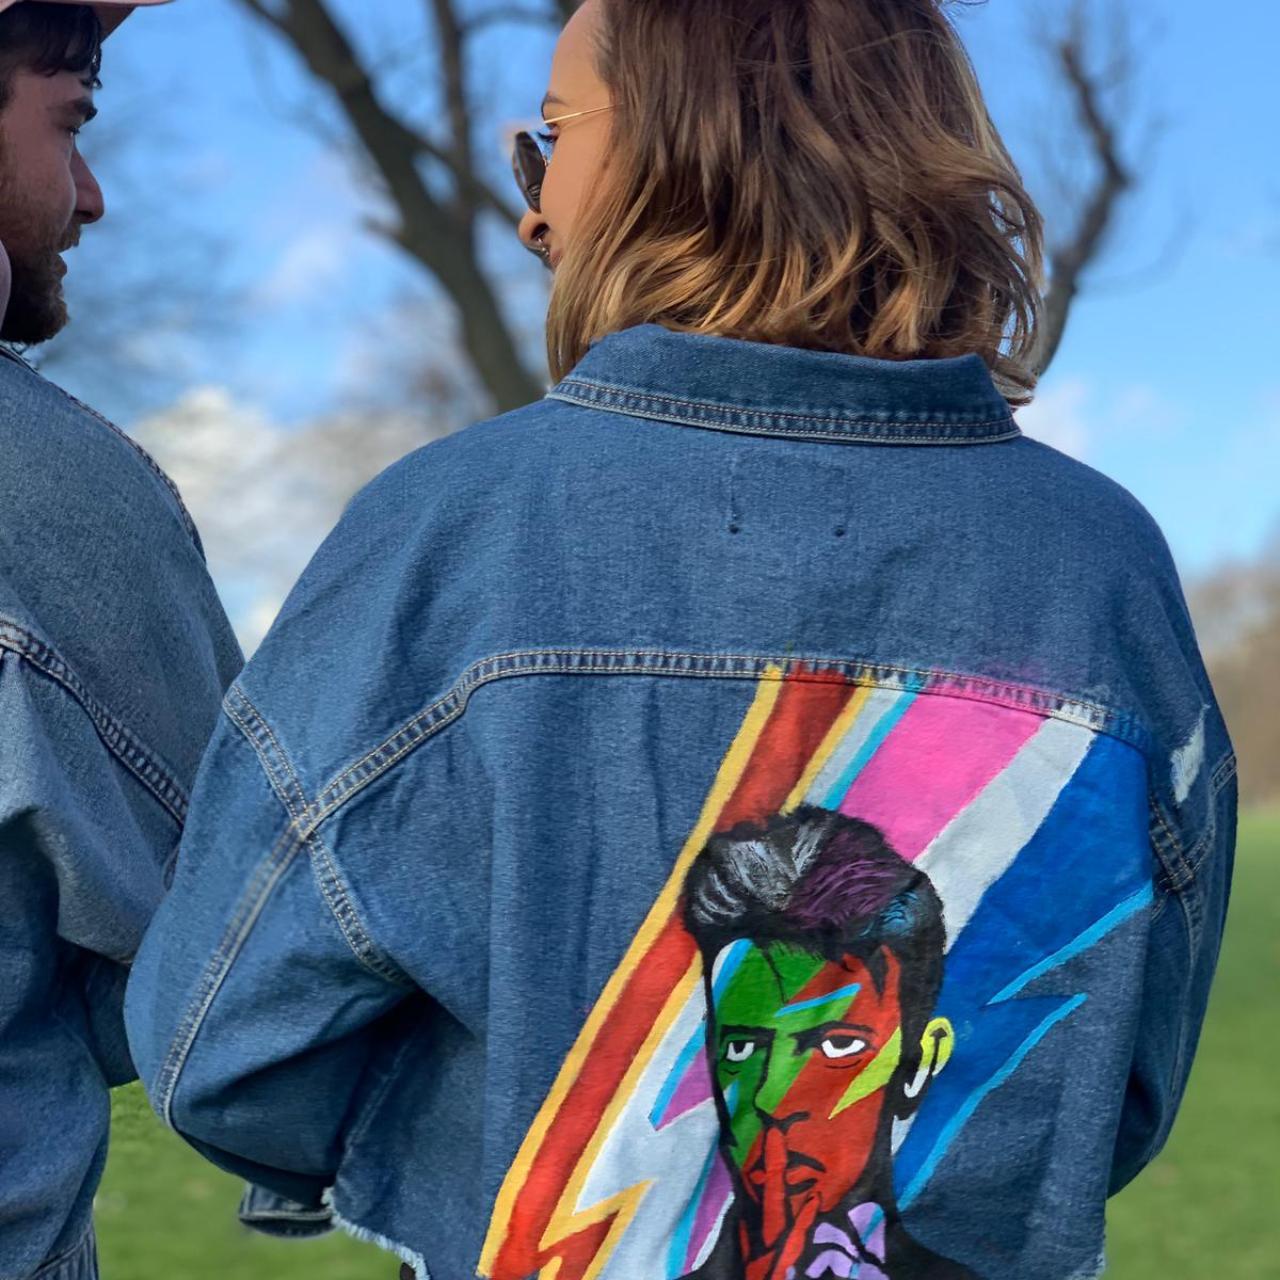 jean jacket paint designs